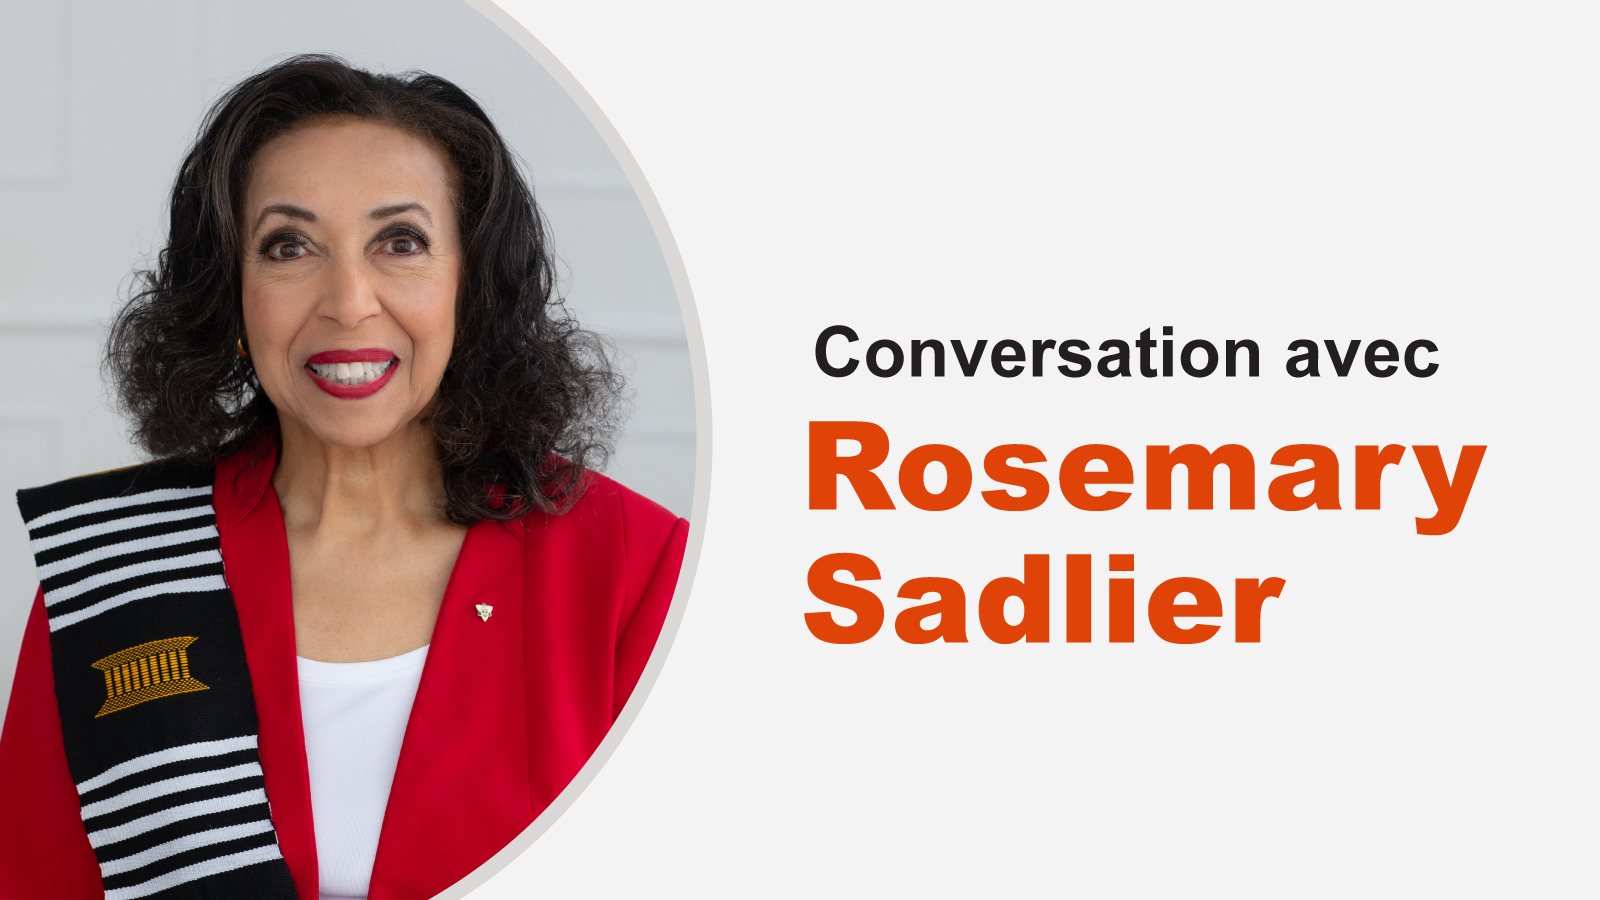 Portrait de Rosemary Sadlier. À droite, on lit : Conversation avec Rosemary Sadlier.